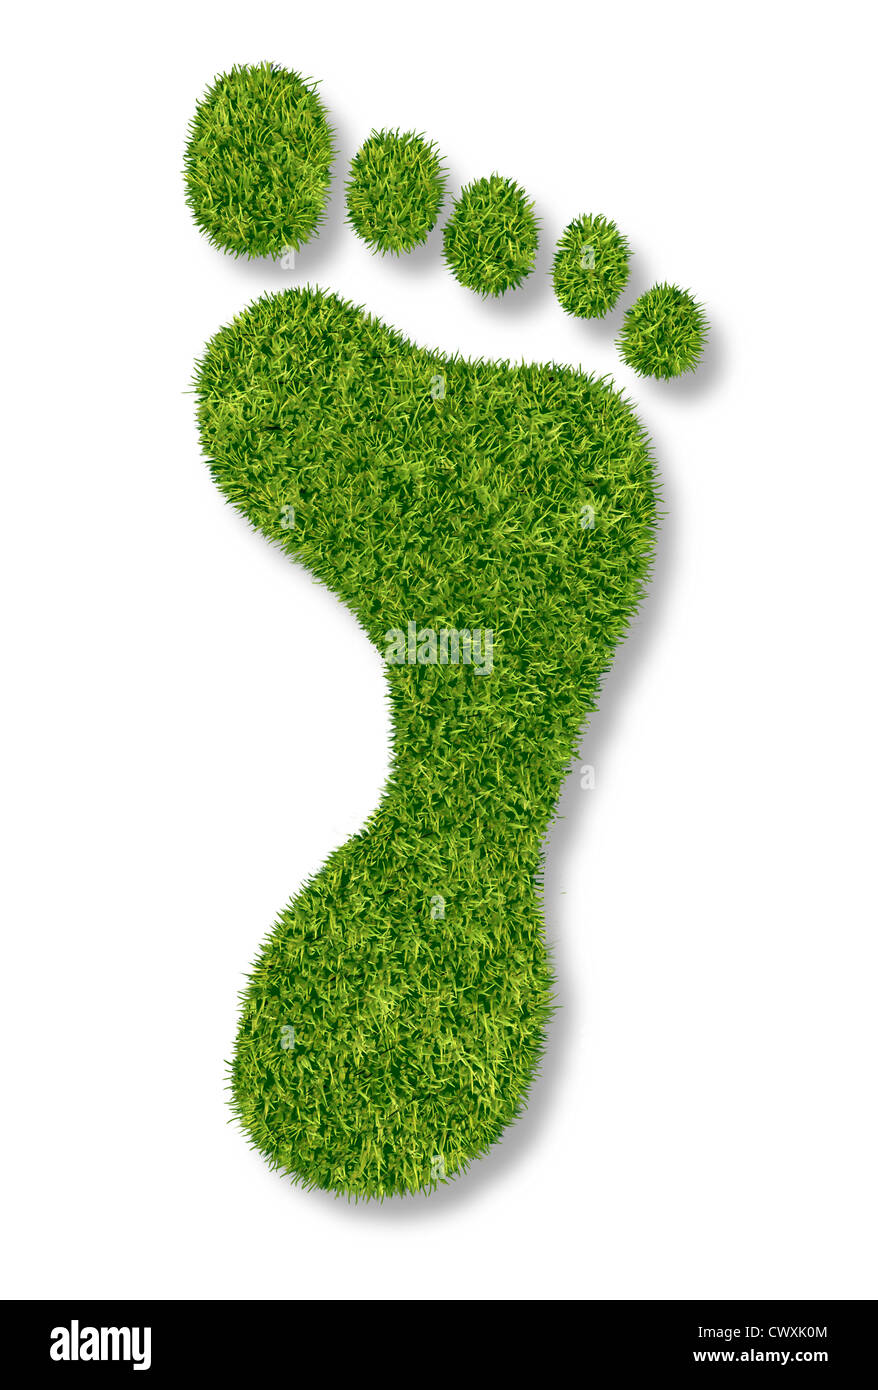 CO2-Fußabdruck oder Gartenarbeit Symbol mit grünen Rasen Naturrasen in Form von einem Fußdruck als Symbol der Natur Stockfoto